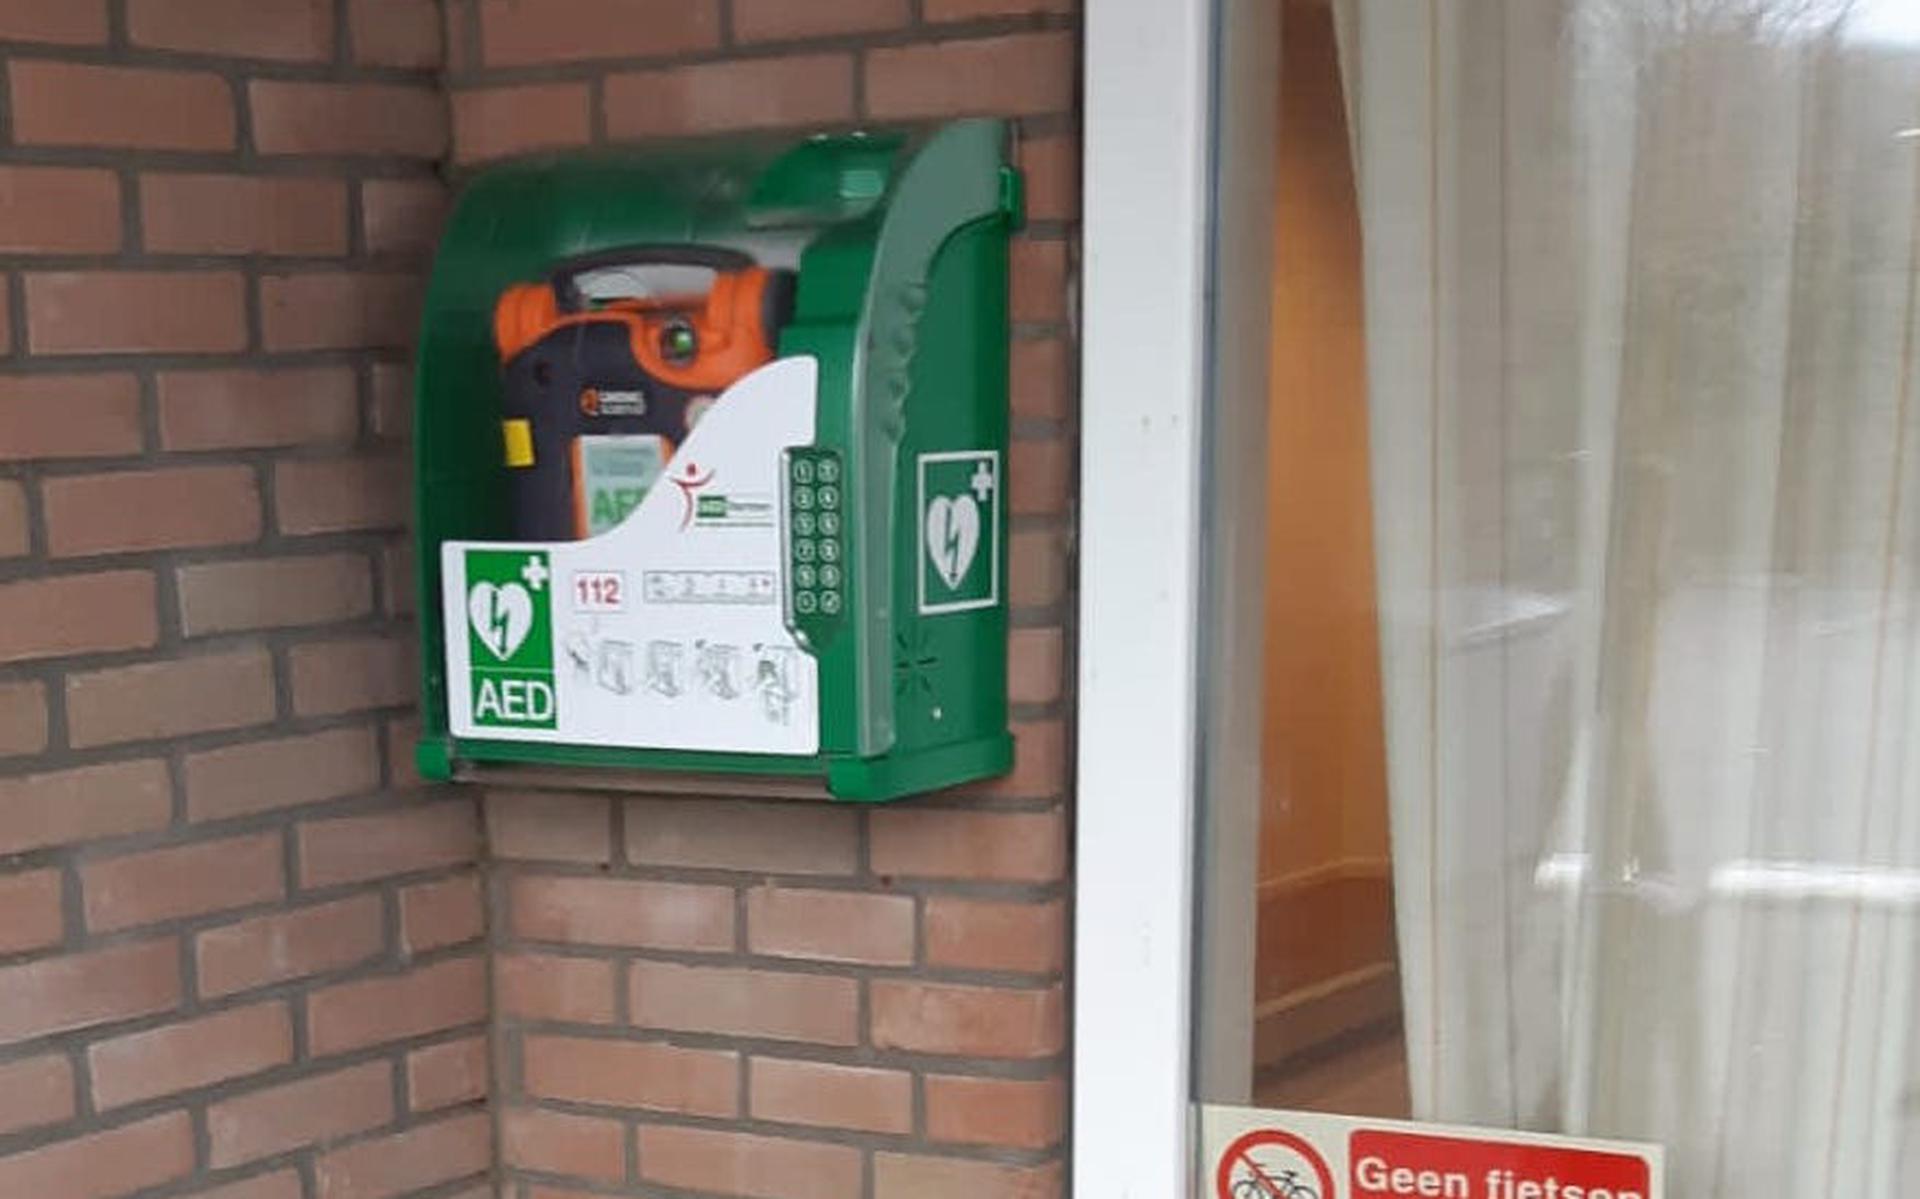 Nijeveen krijgt dankzij dorpsvereniging nieuwe AED's. 